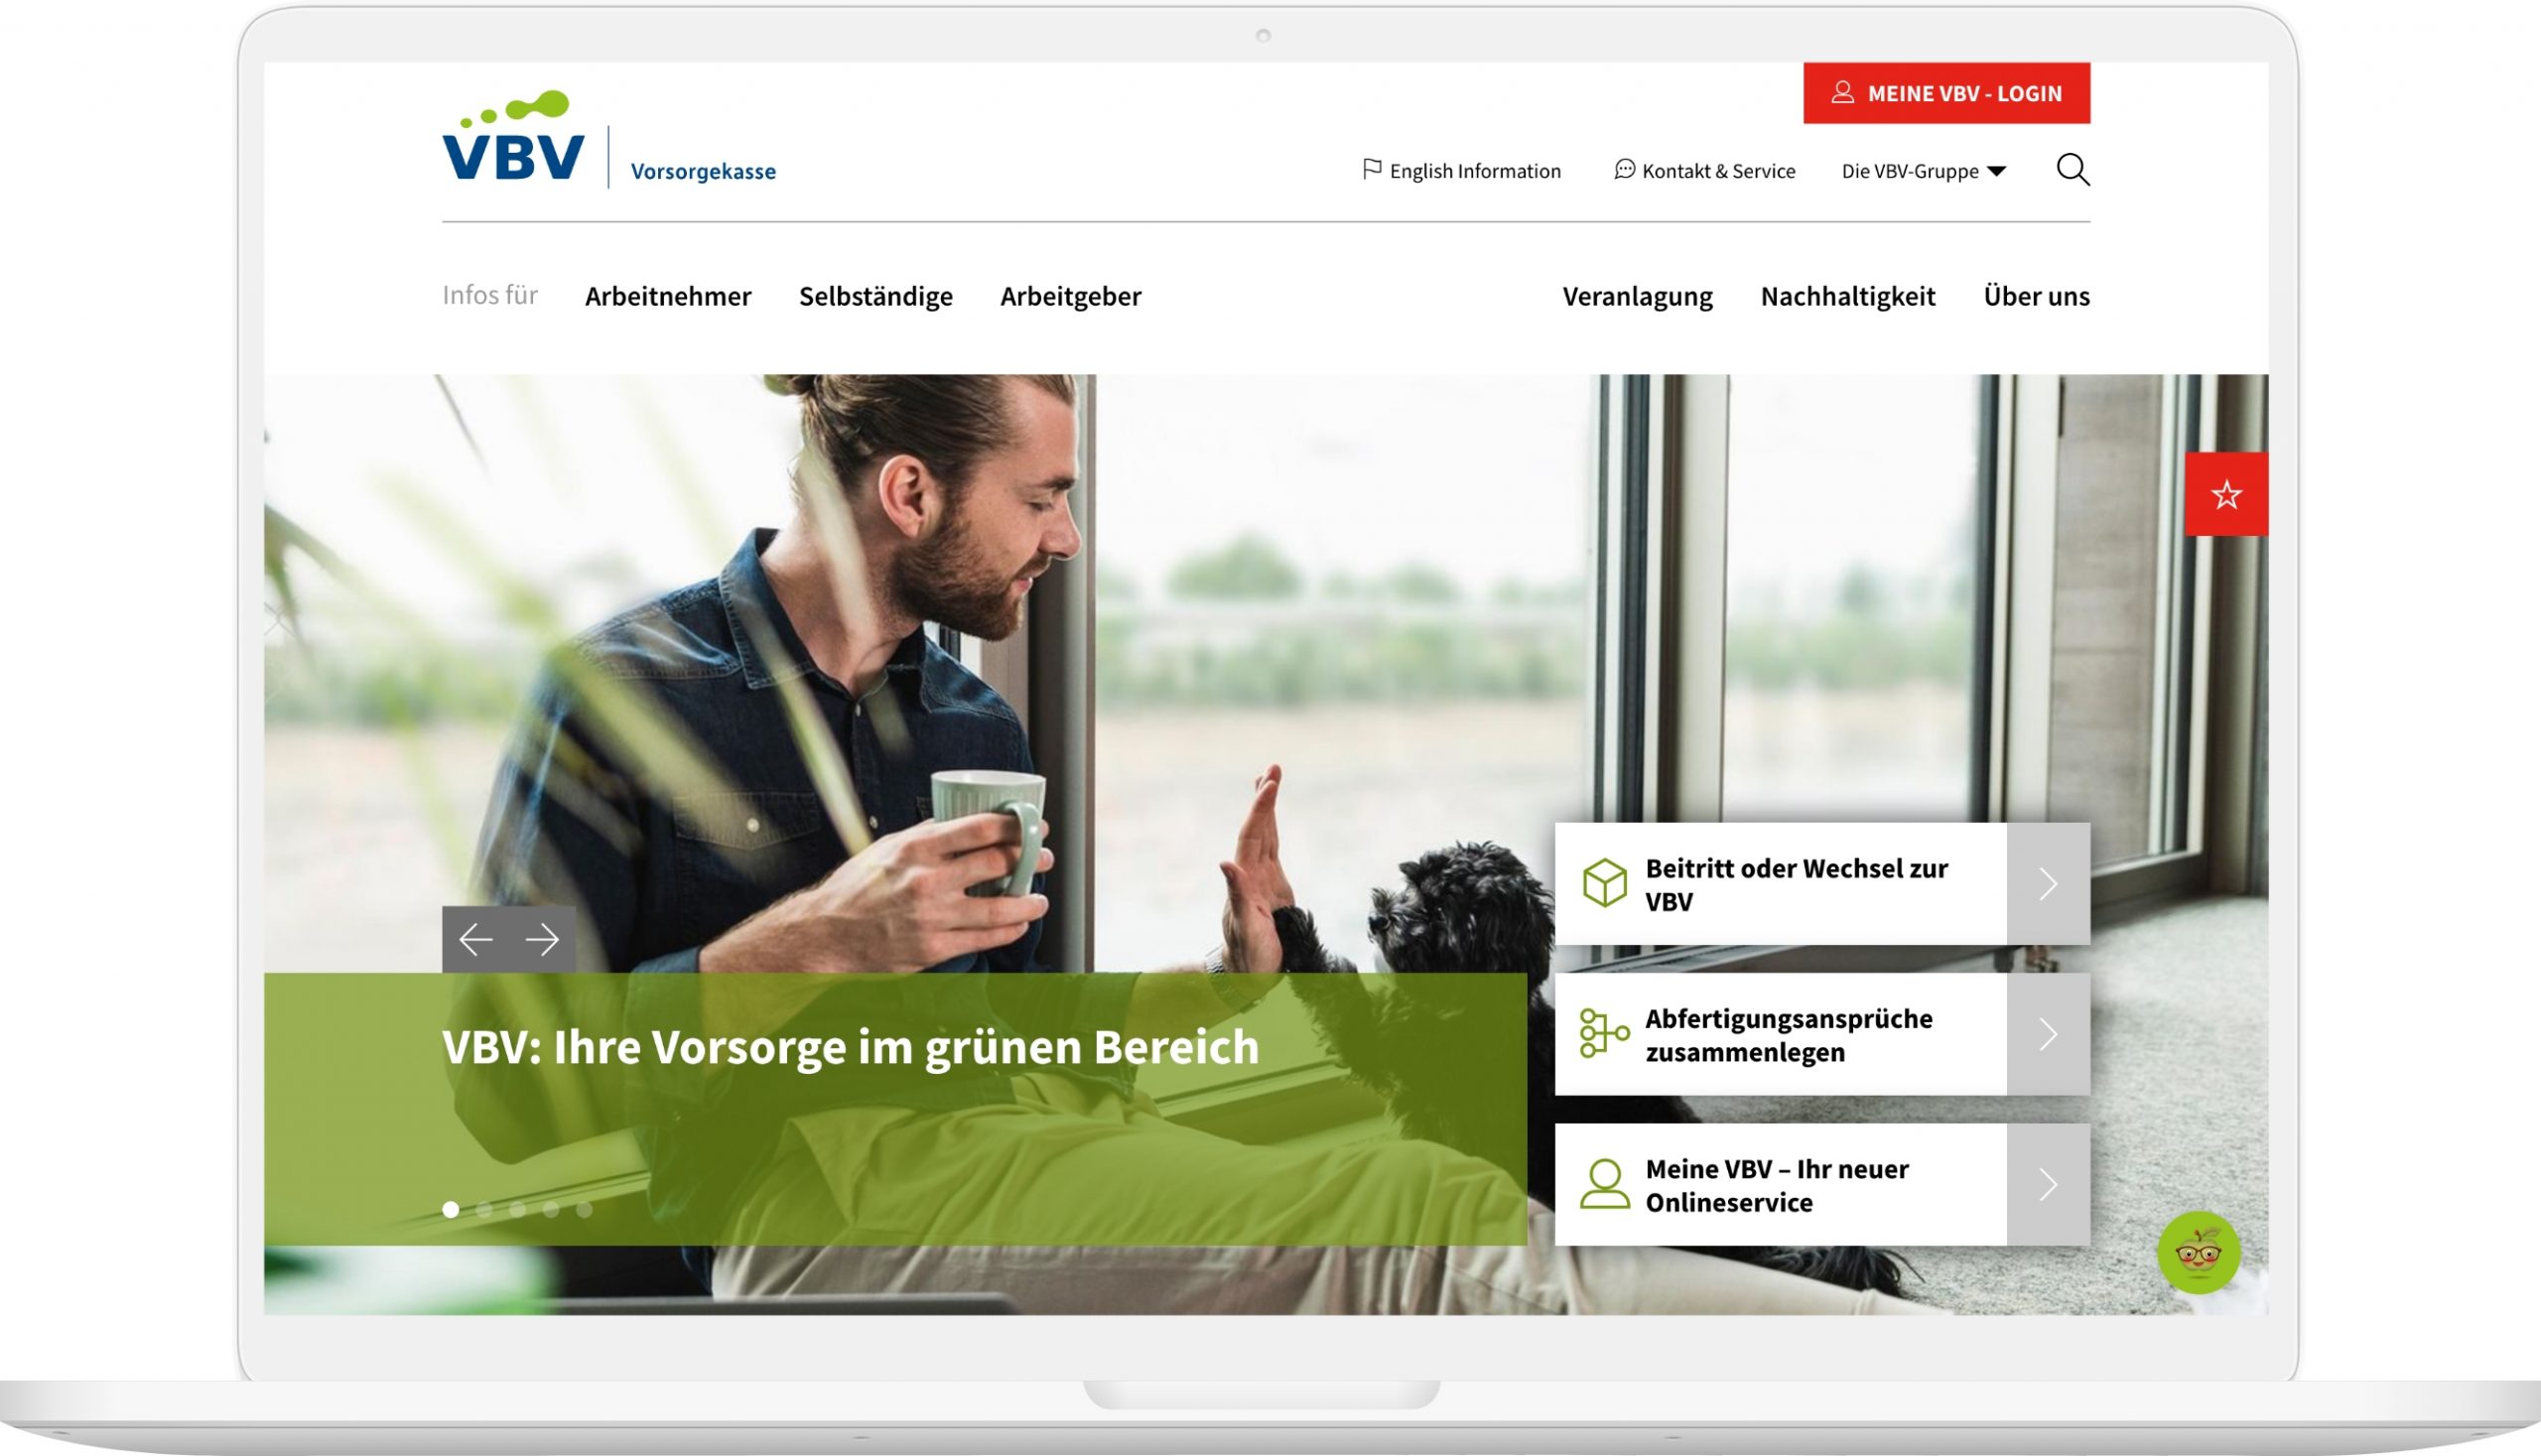 Viewport der VBV Startseite auf Laptop